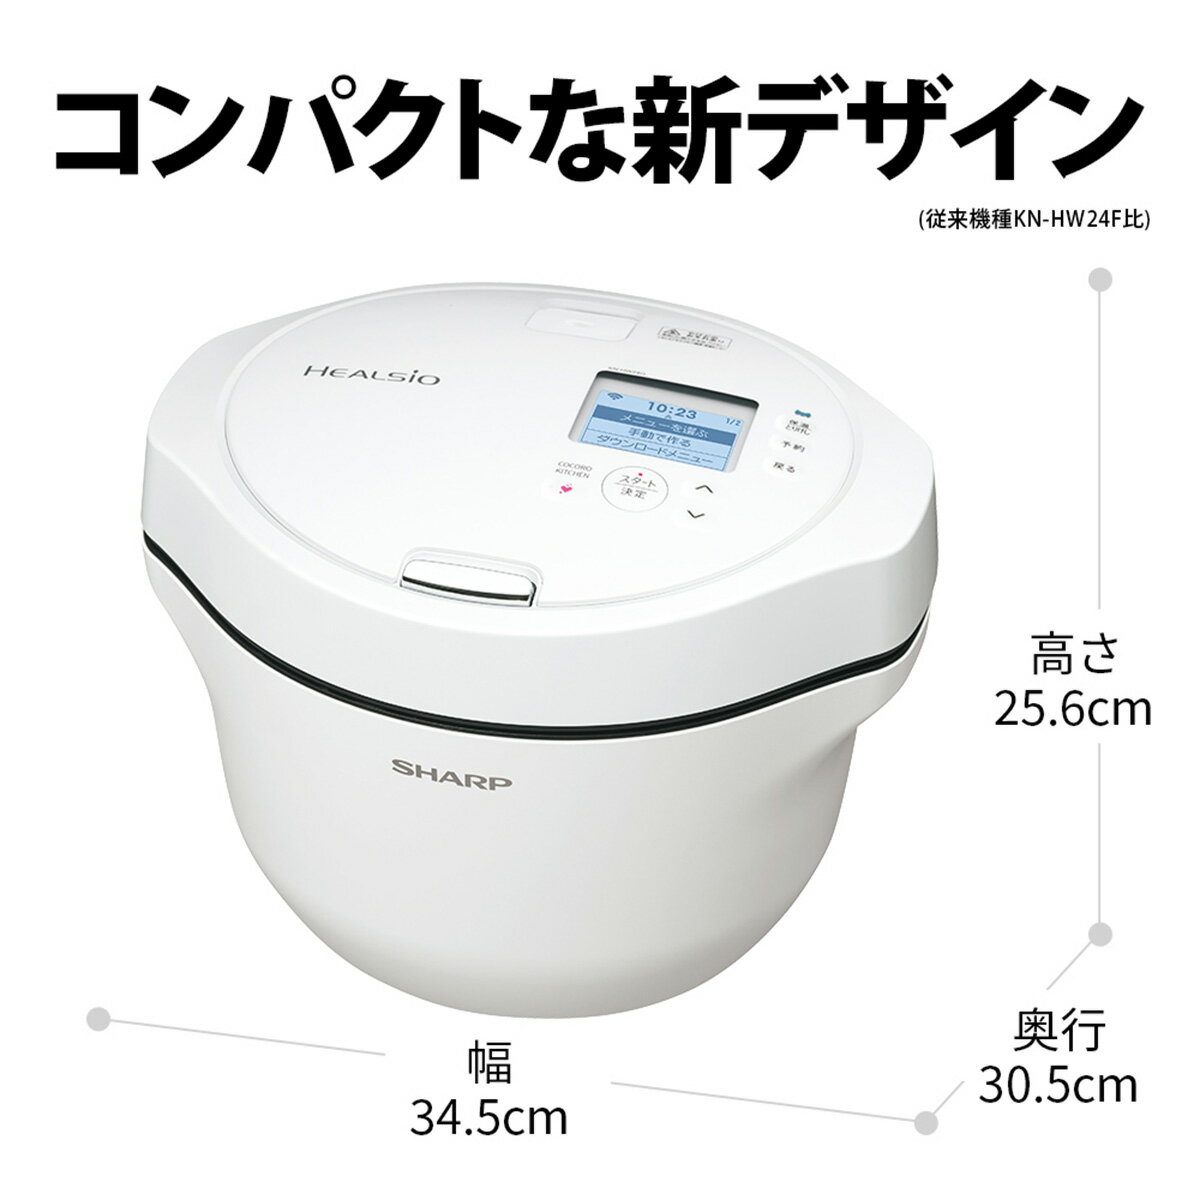 日本人気超絶の ホットクック 2.4Lタイプ ホワイト系 KN-HW24G-W econet.bi